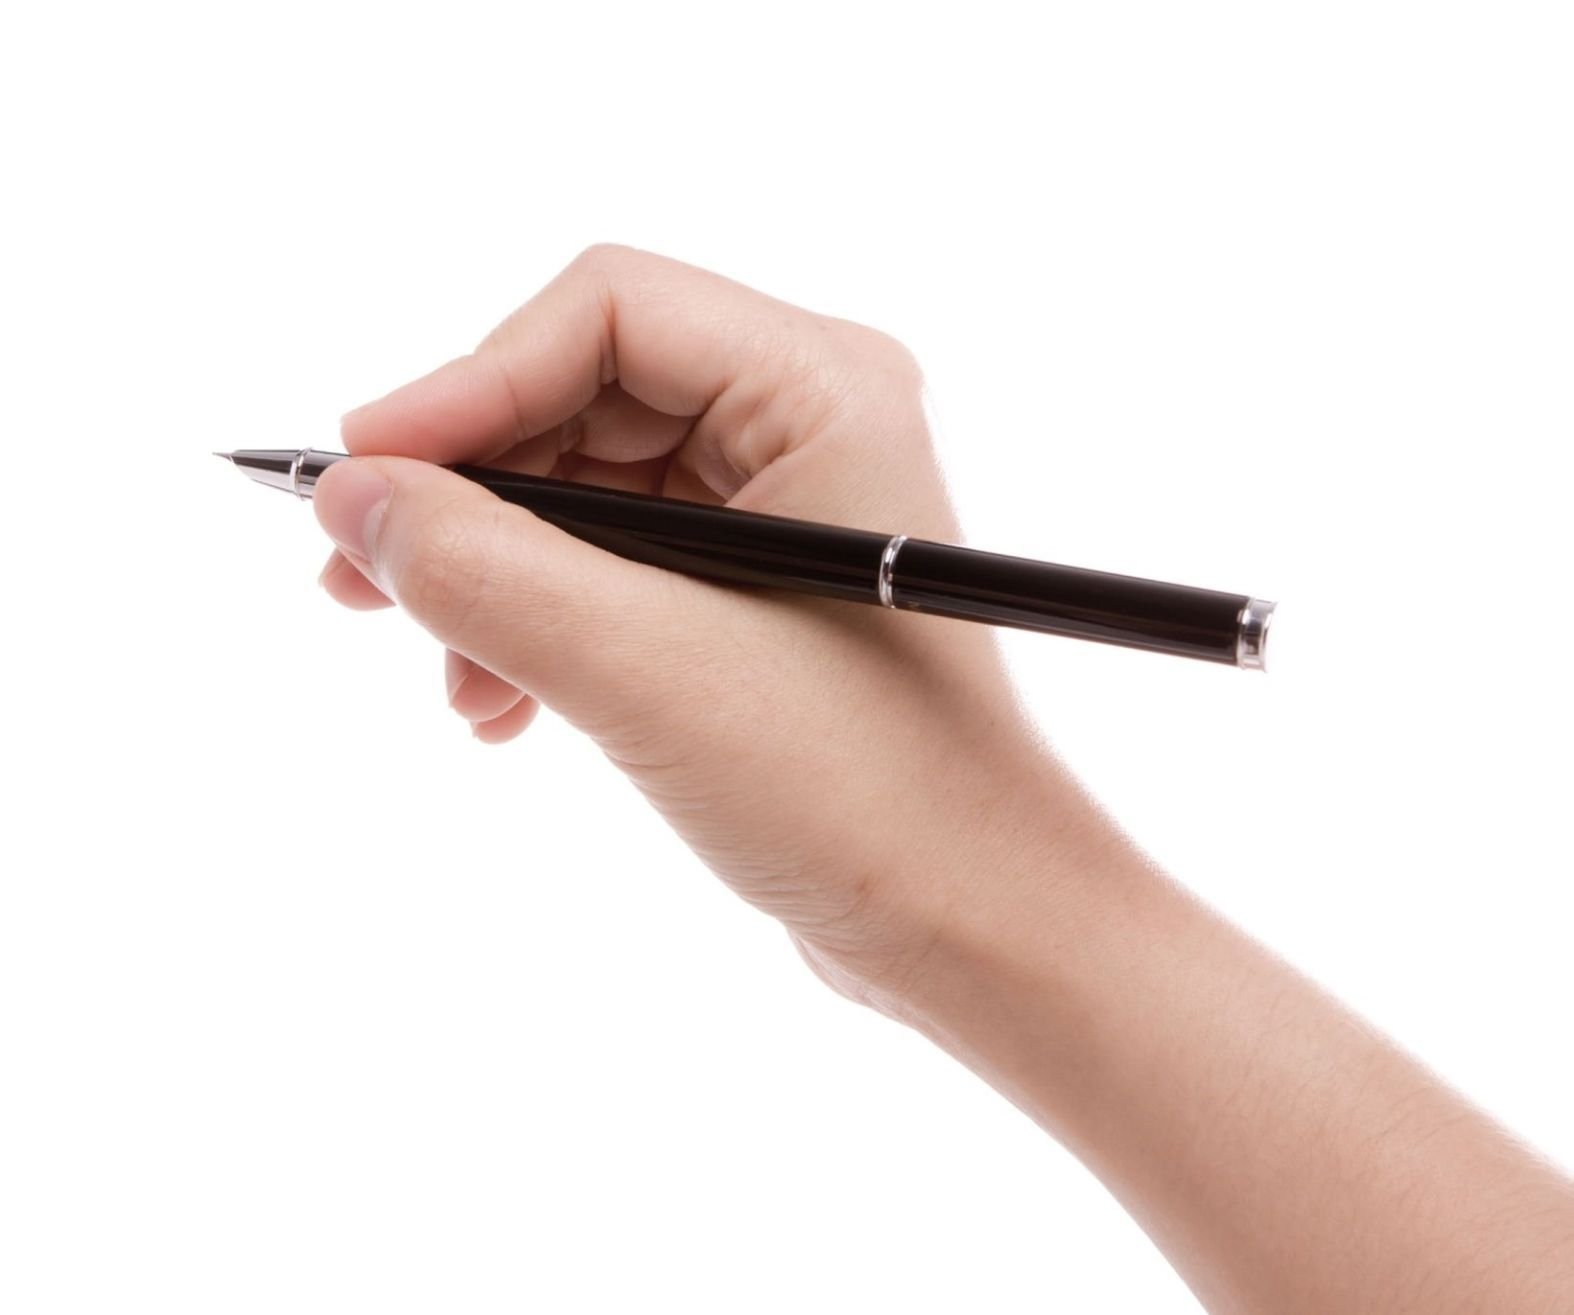 Take your pen. Рука с ручкой. Рука с авторучкой. Женская рука с ручкой. Рука держит ручку.